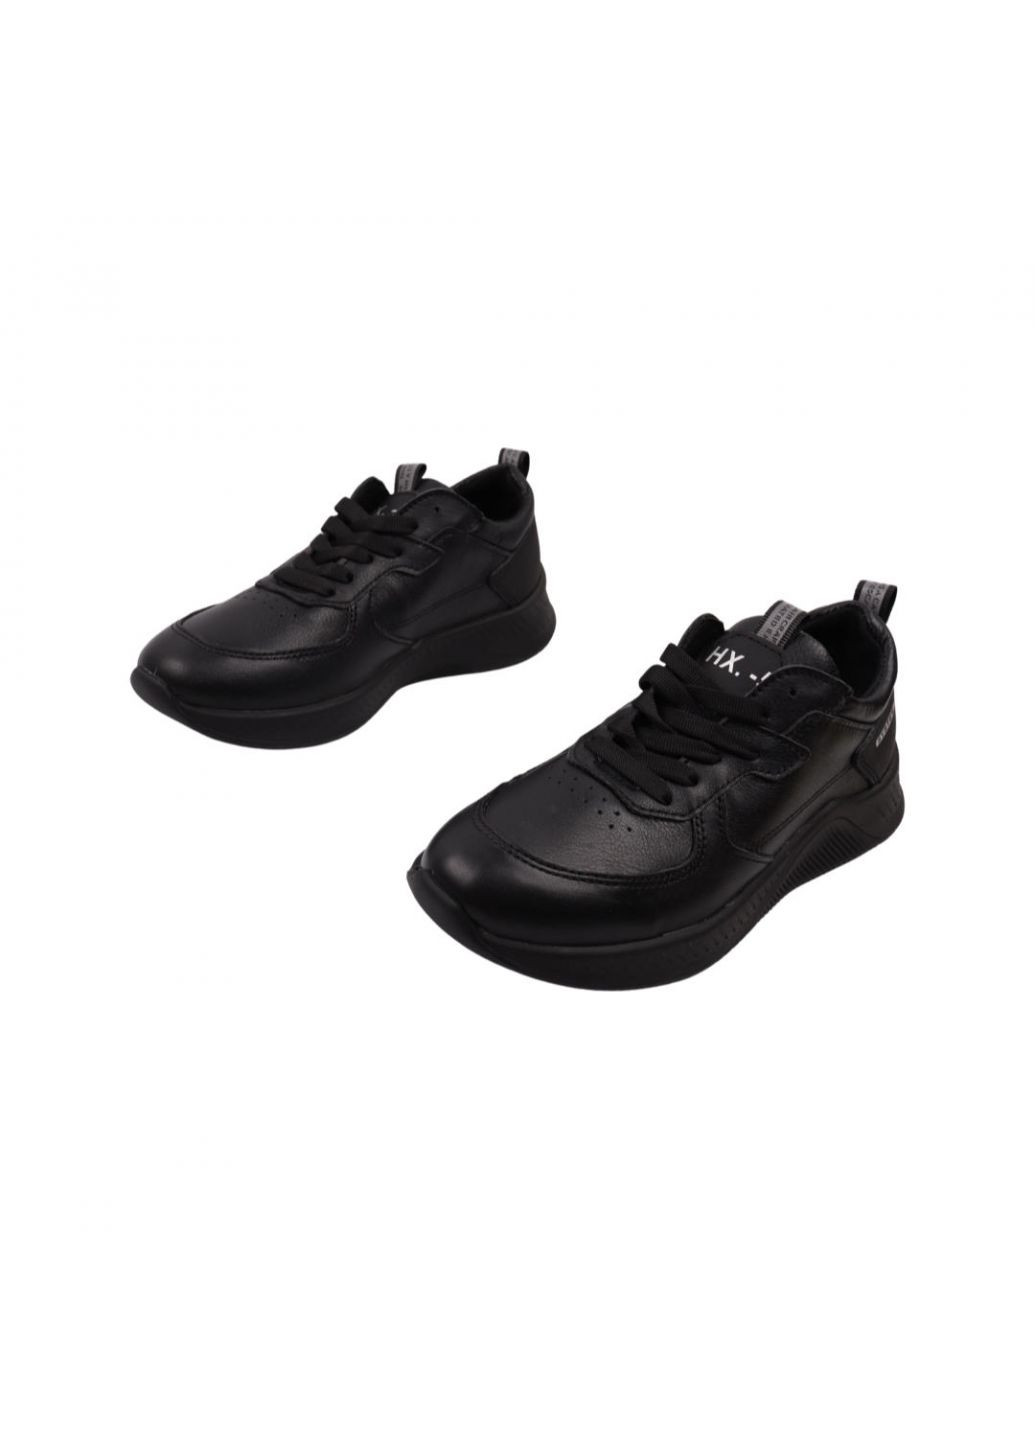 Черные кроссовки мужские черные натуральная кожа Konors 614-22DTS